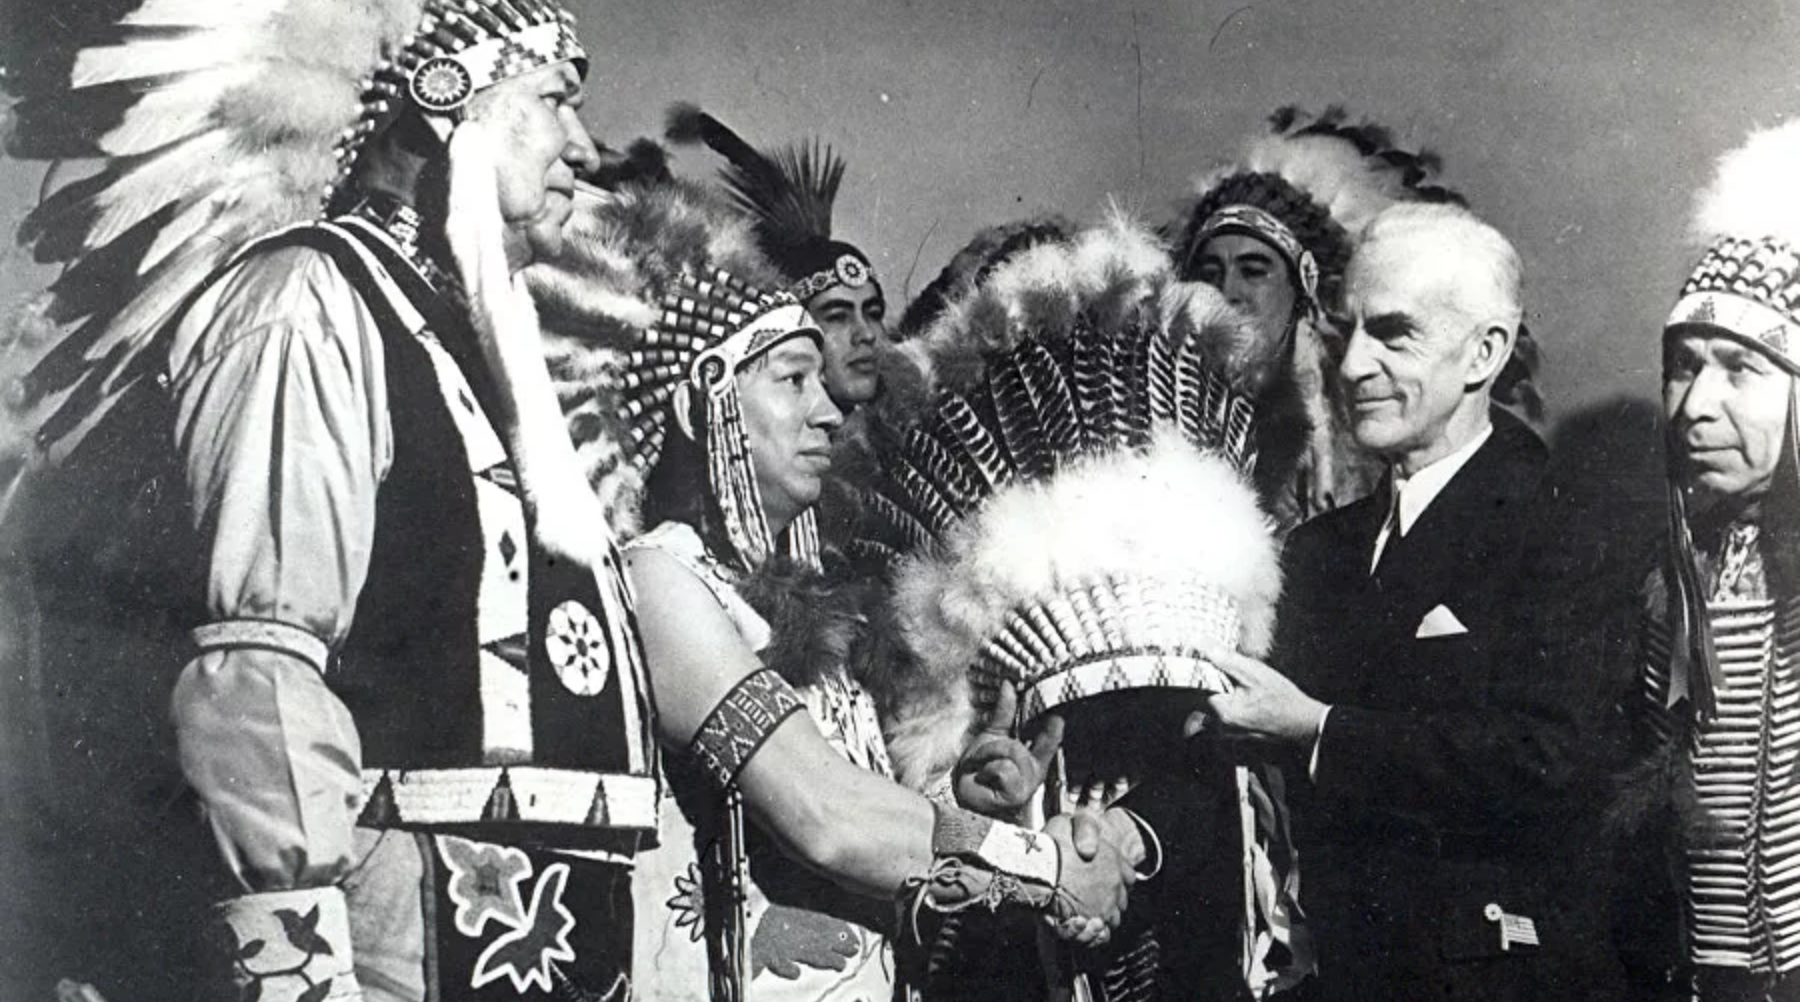 Ceremonija predaje nacionalnog indijanskog ukrasa za glavu u New Yorku, 1942.

